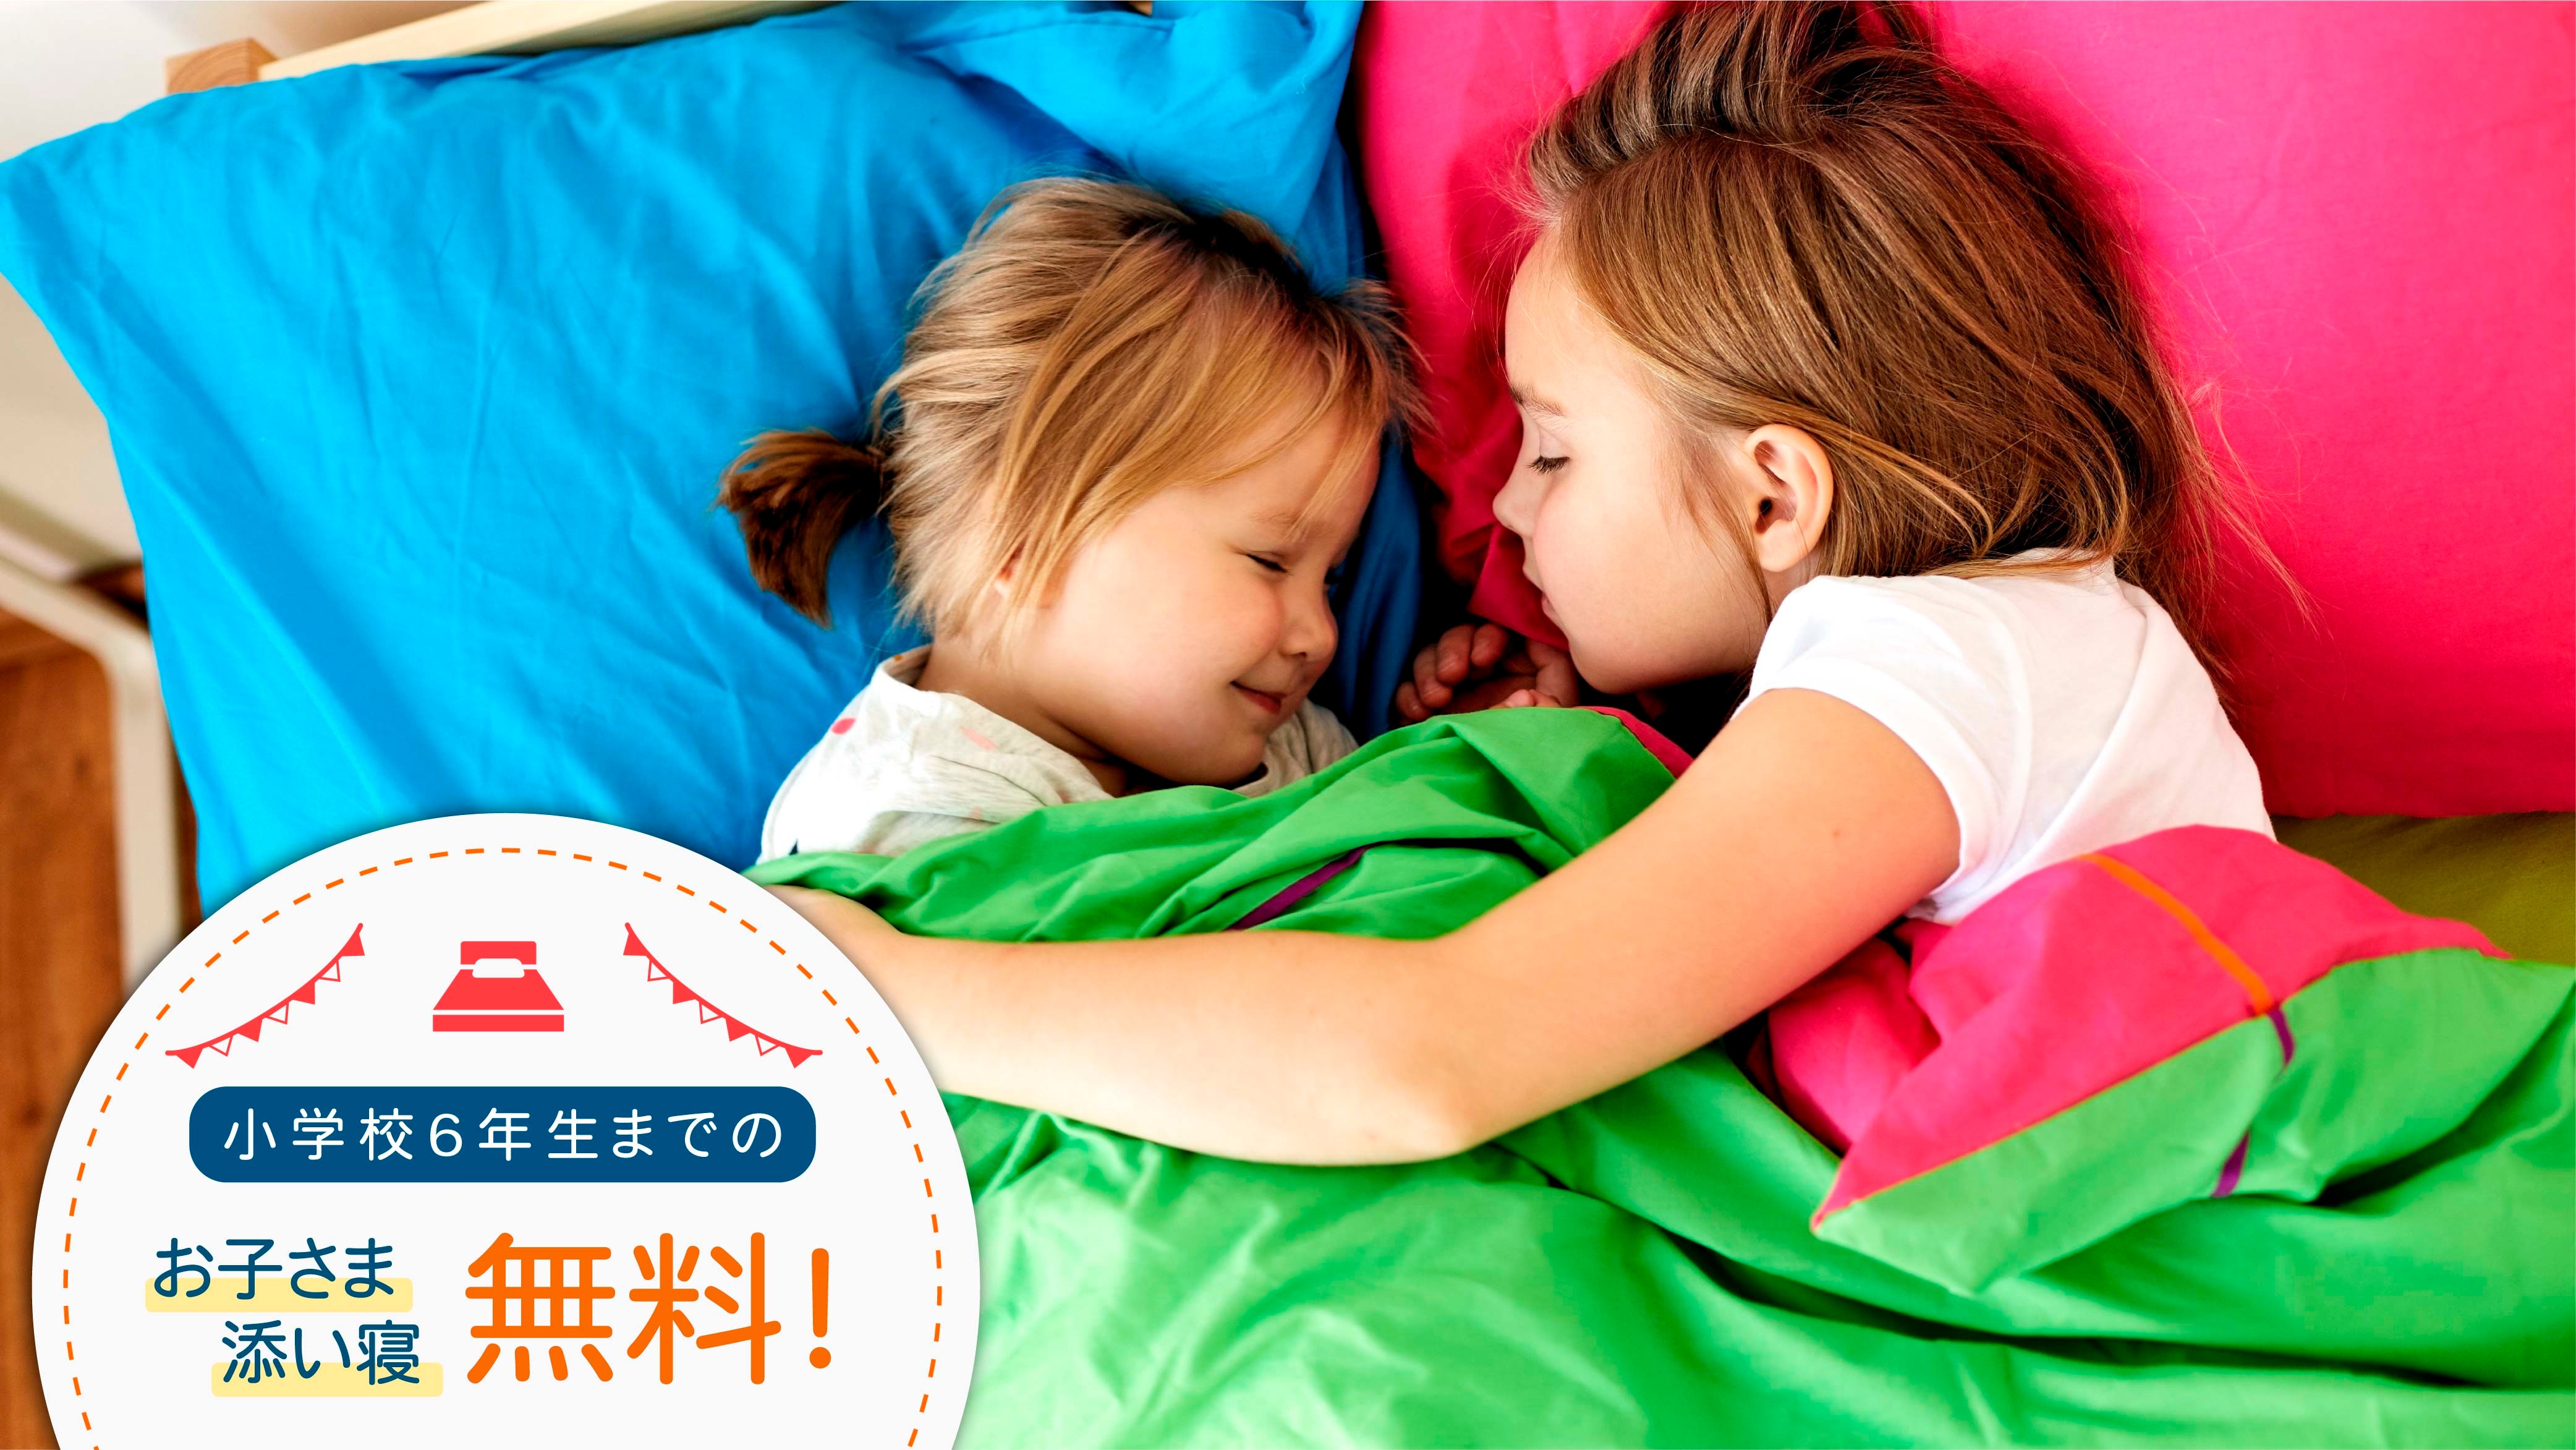 [เด็กนอนร่วมเตียงฟรี] เด็กที่ใช้เตียงร่วมกันจนถึงชั้นประถมศึกษาปีที่ 6 ฟรี